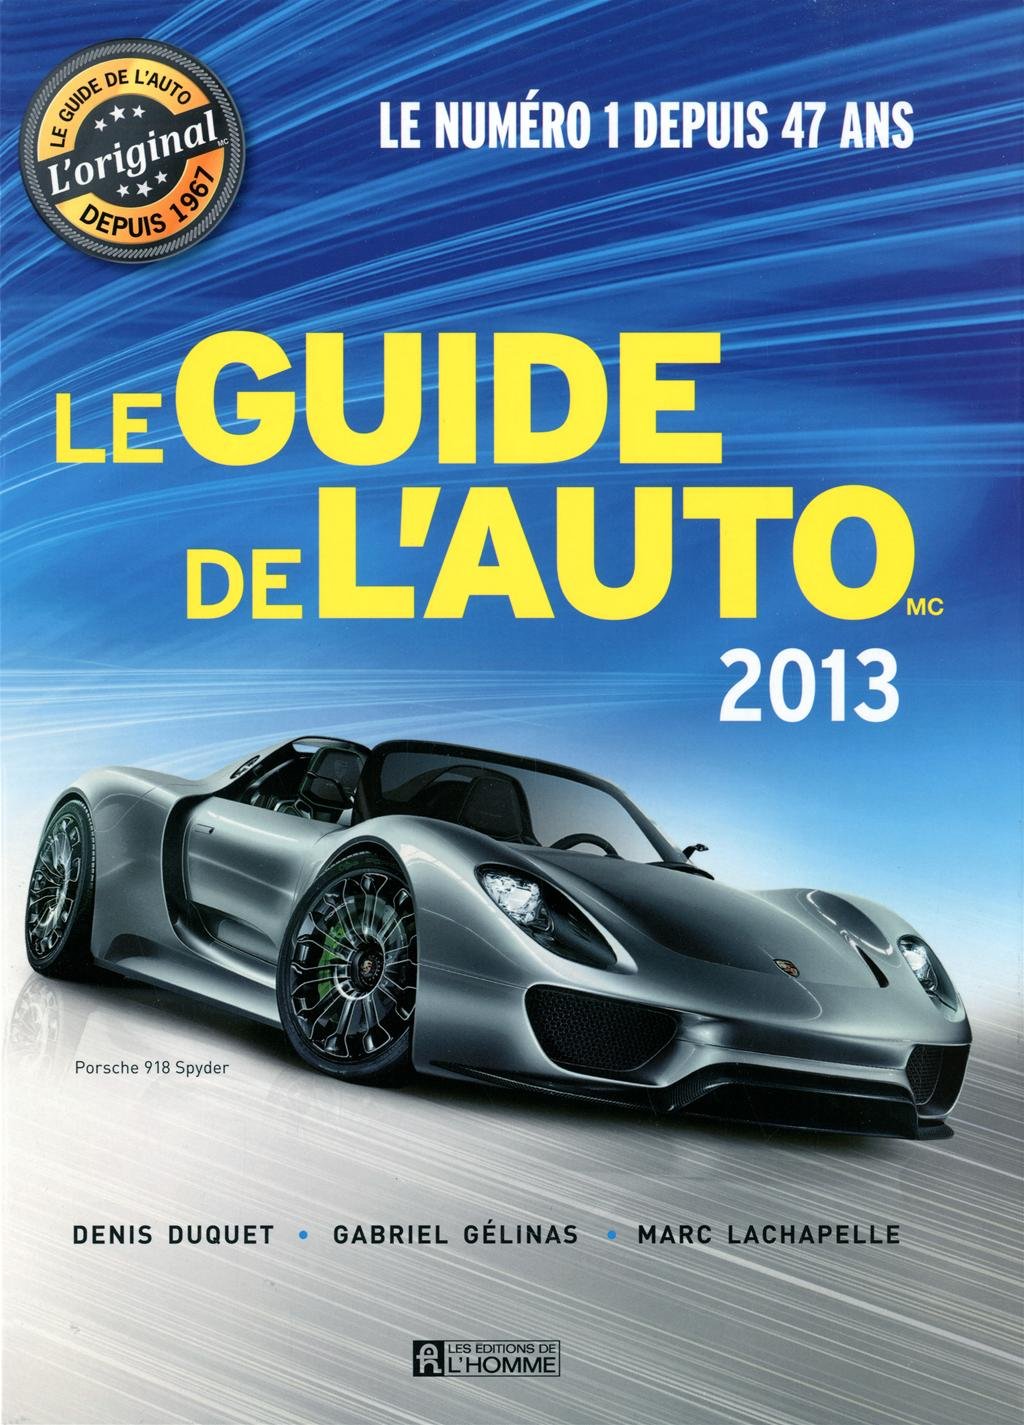 Le Guide de l'Auto 2013 - Denis Duquet